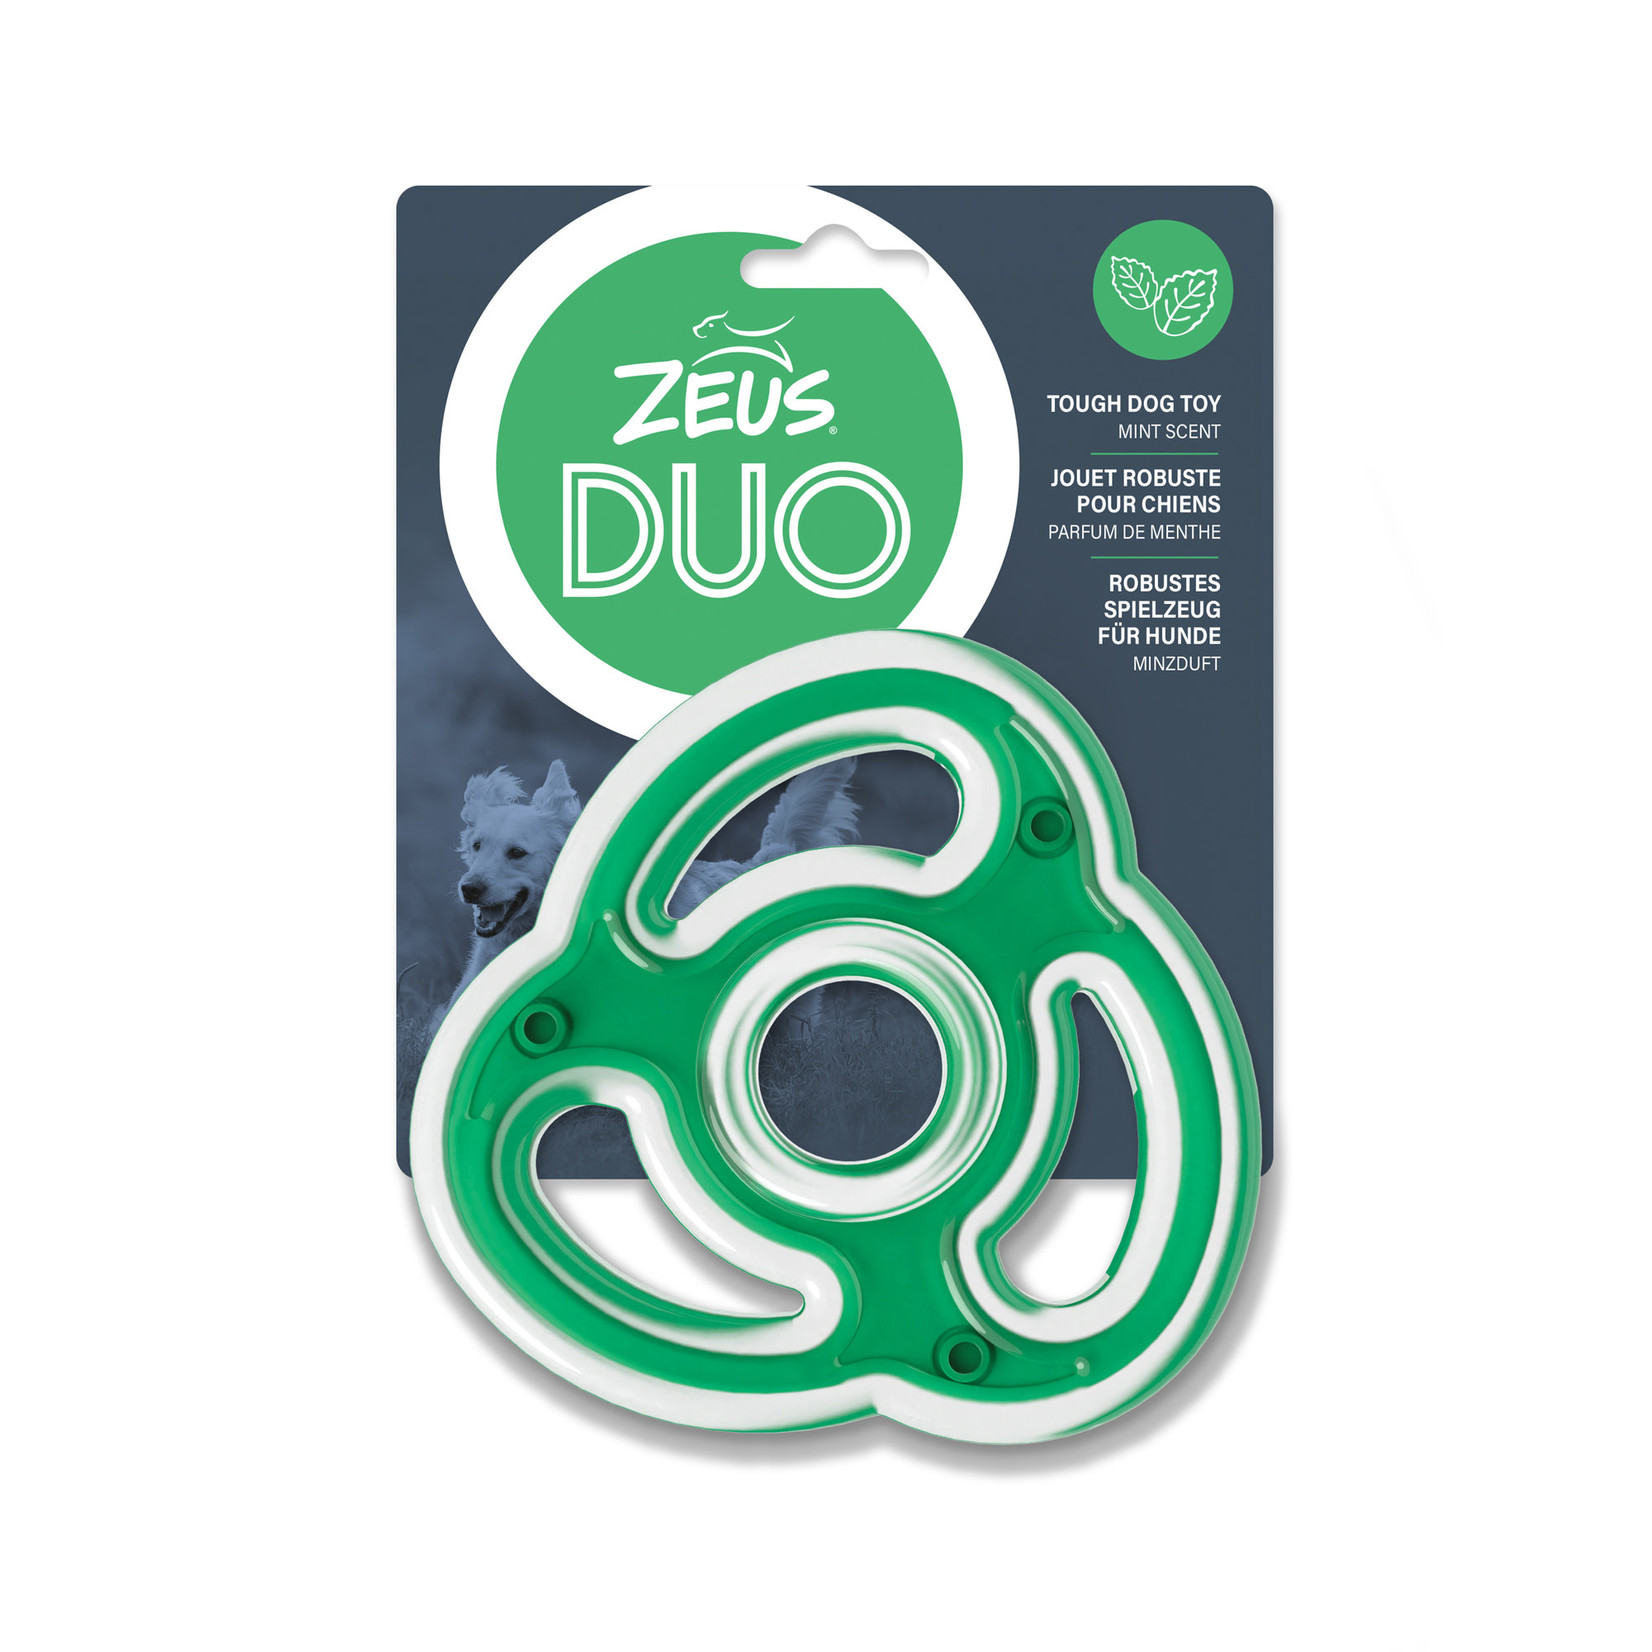 ZEUS Zeus Duo Ninja Star - Mint Scent - Green - 12.5 cm (5 in)